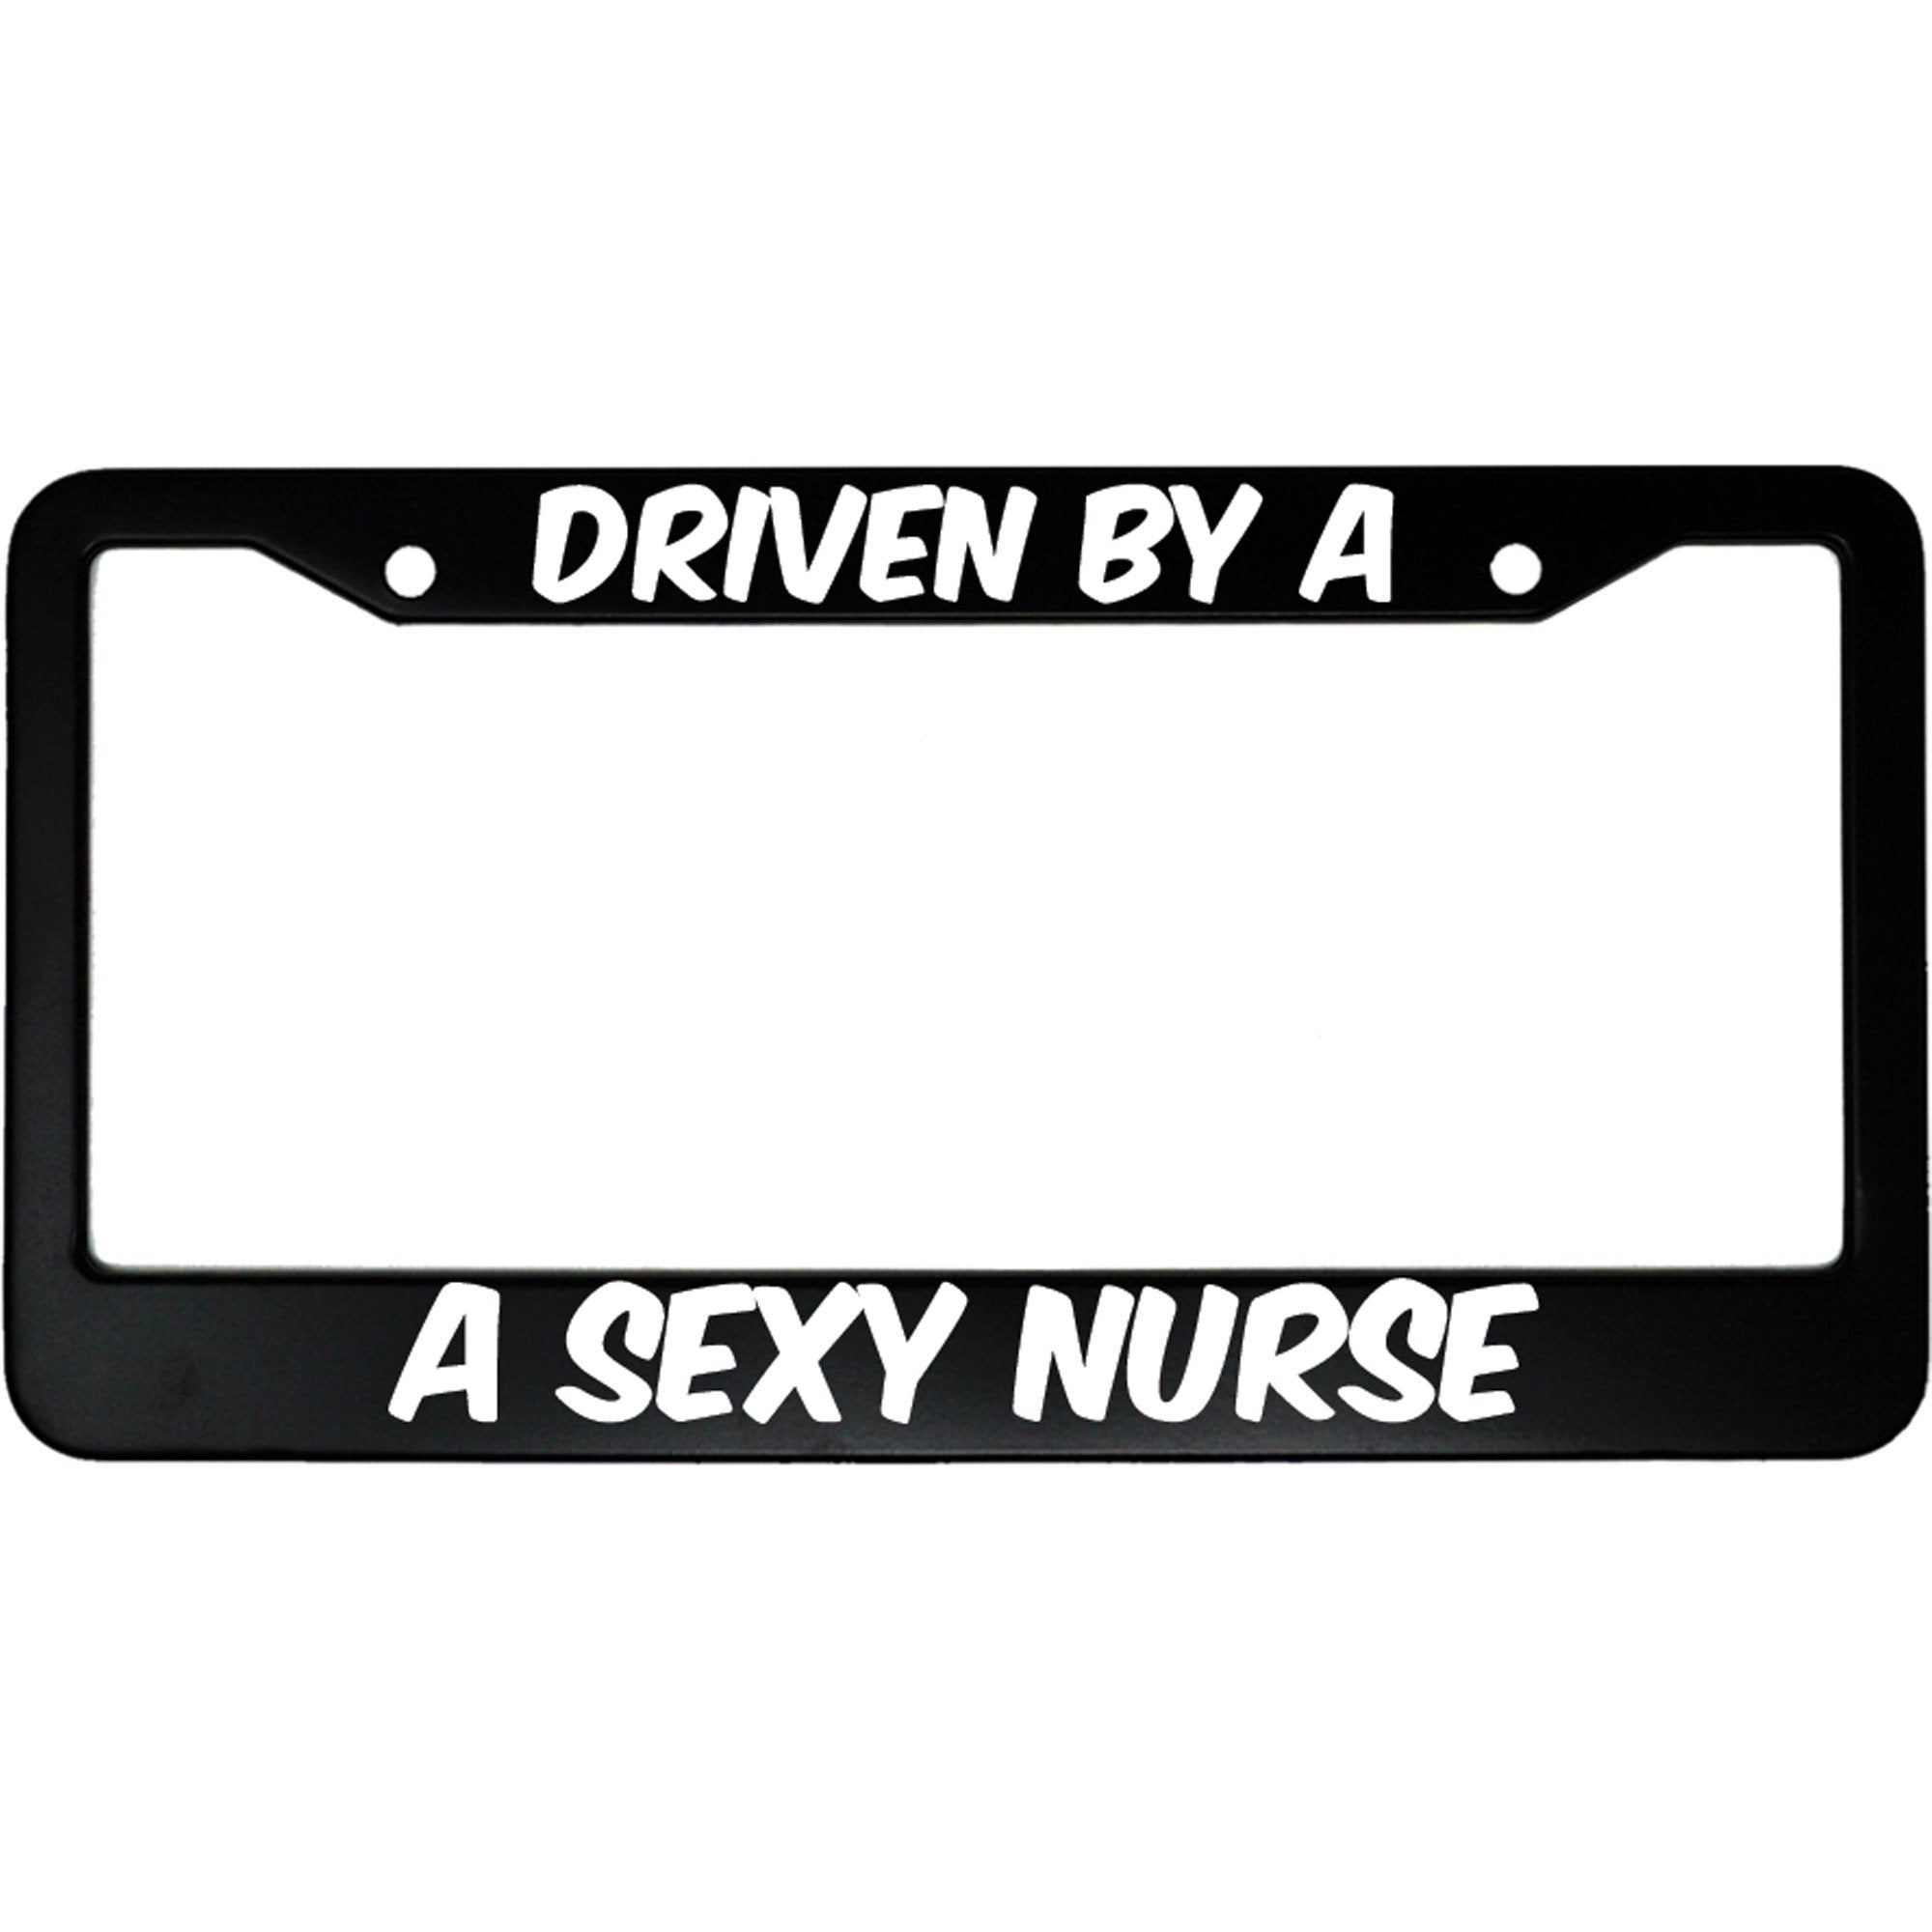 Driven By A Sexy Nurse